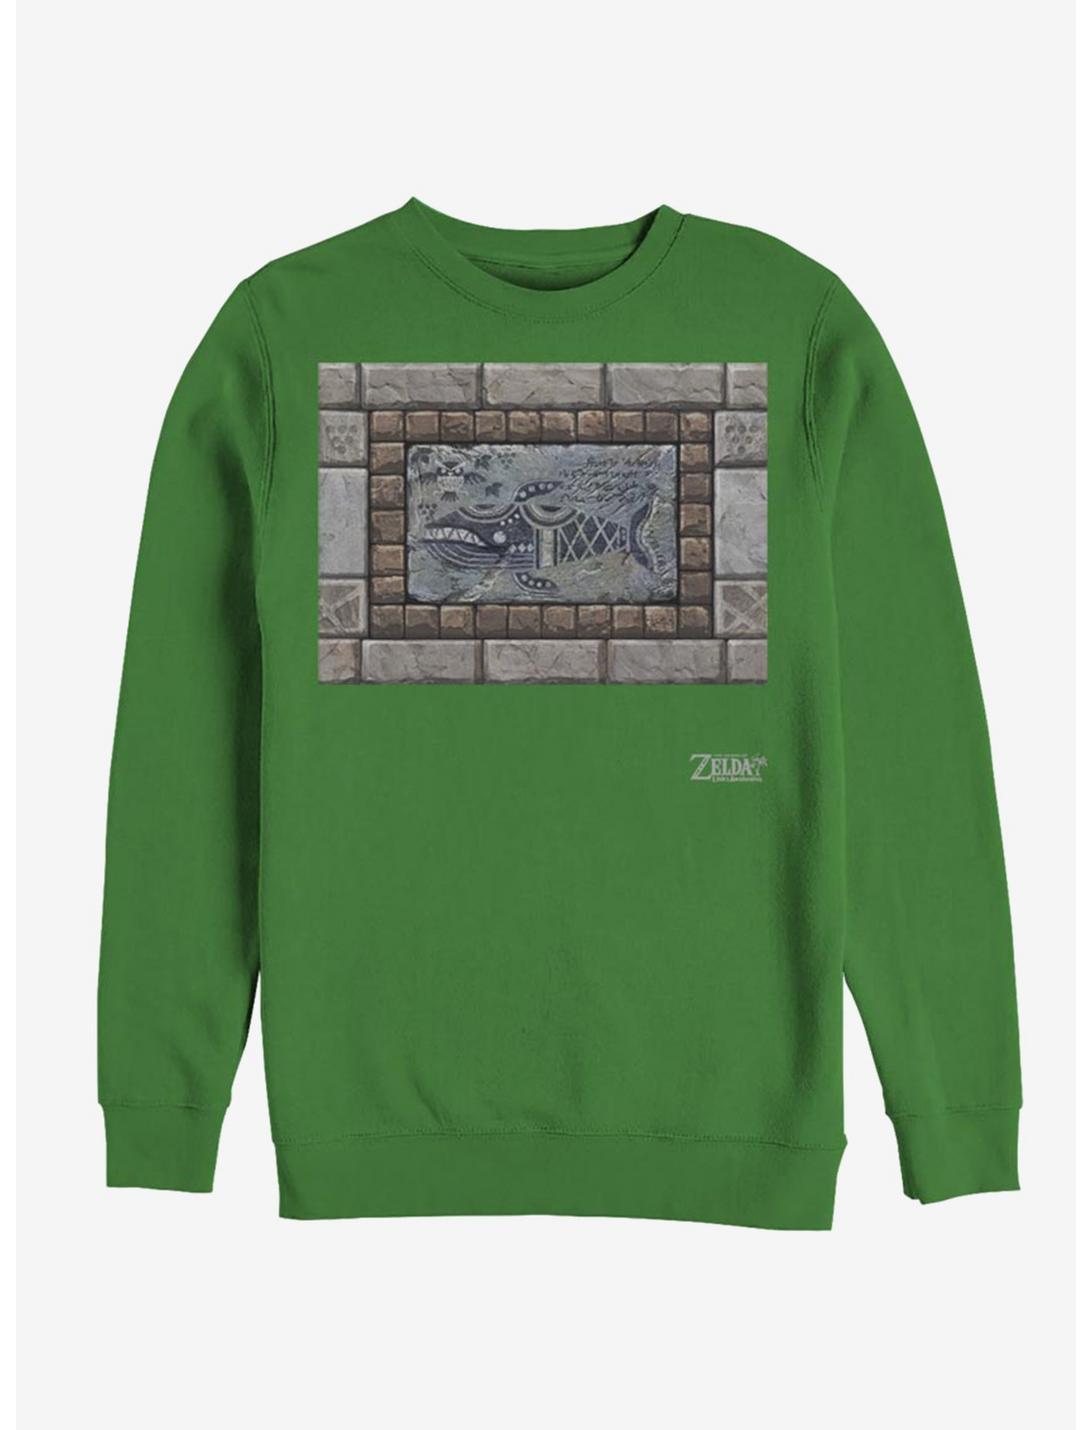 Nintendo The Legend of Zelda: Link's Awakening Whale Tablet Sweatshirt, KELLY, hi-res